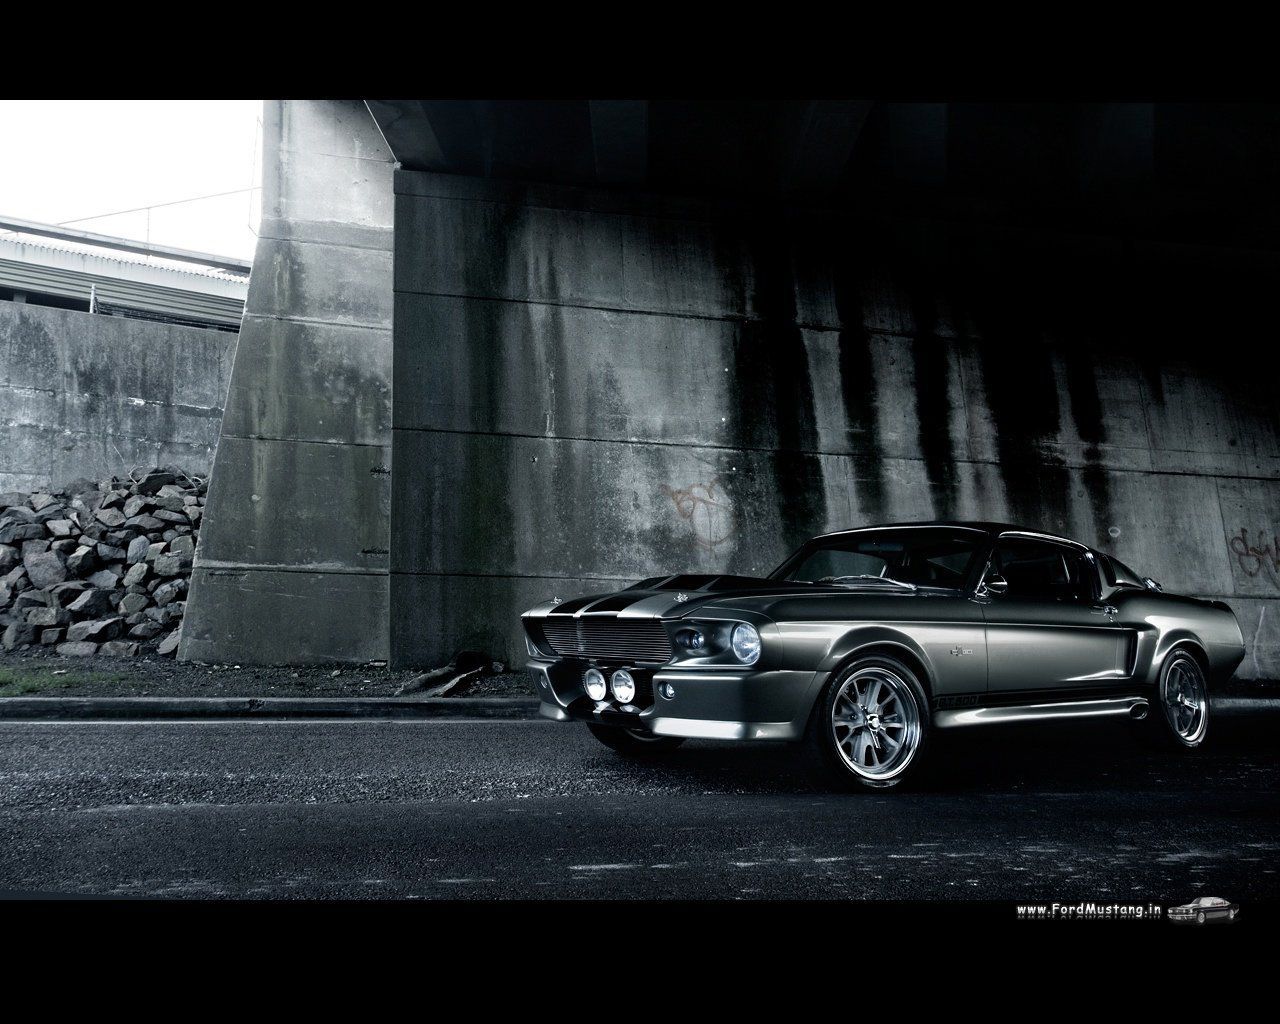 Ford Mustang Shelby GT 500. Ford mustang shelby gt Ford mustang shelby gt, Shelby mustang gt500